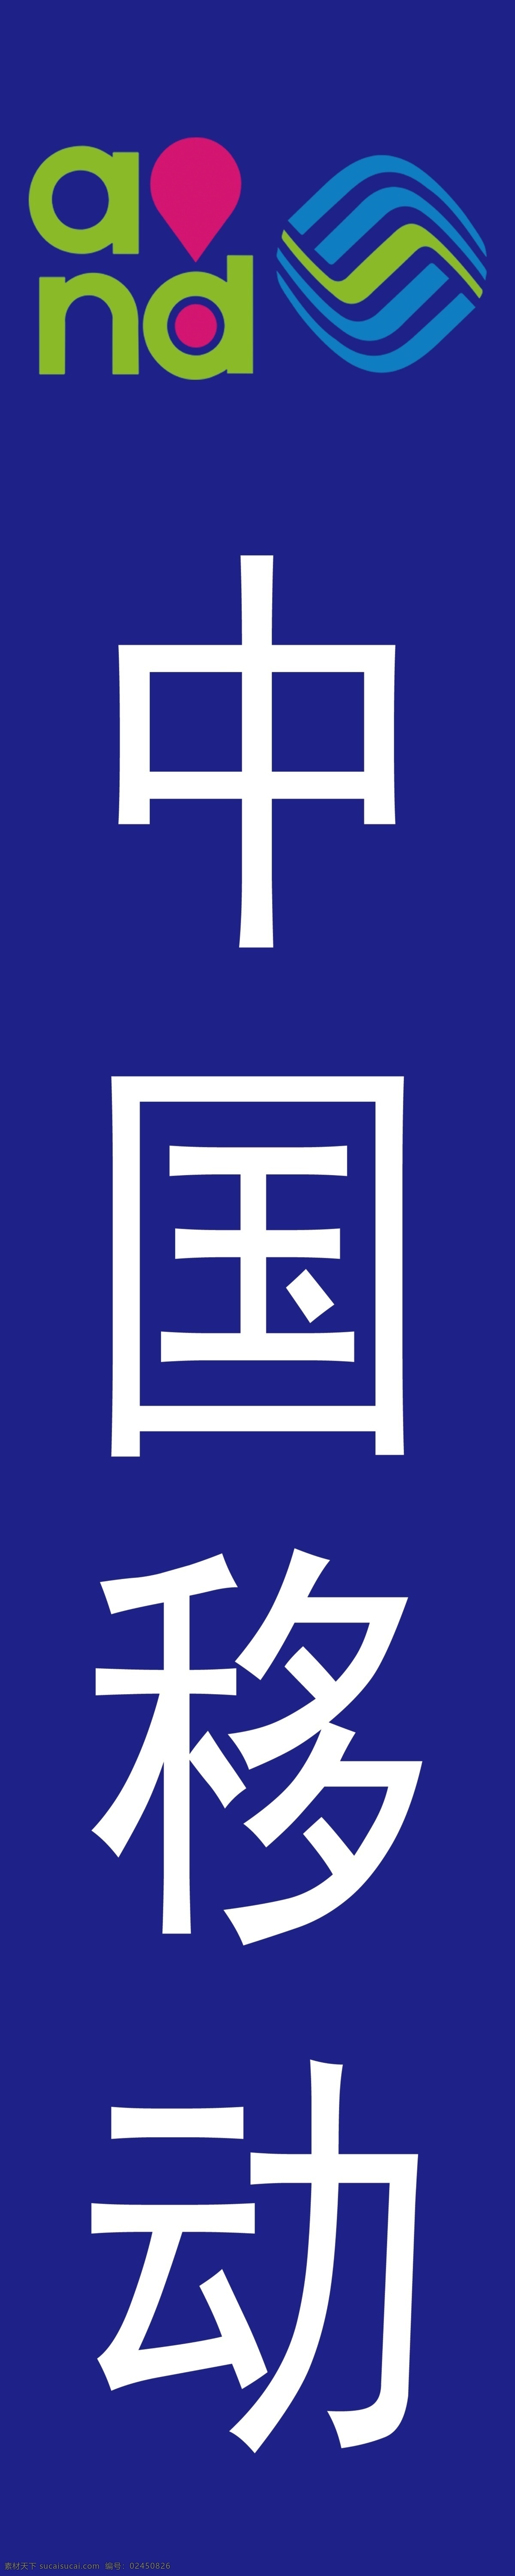 中国移动 logo 移动蓝 psd格式 tiff格式 分层图 分层